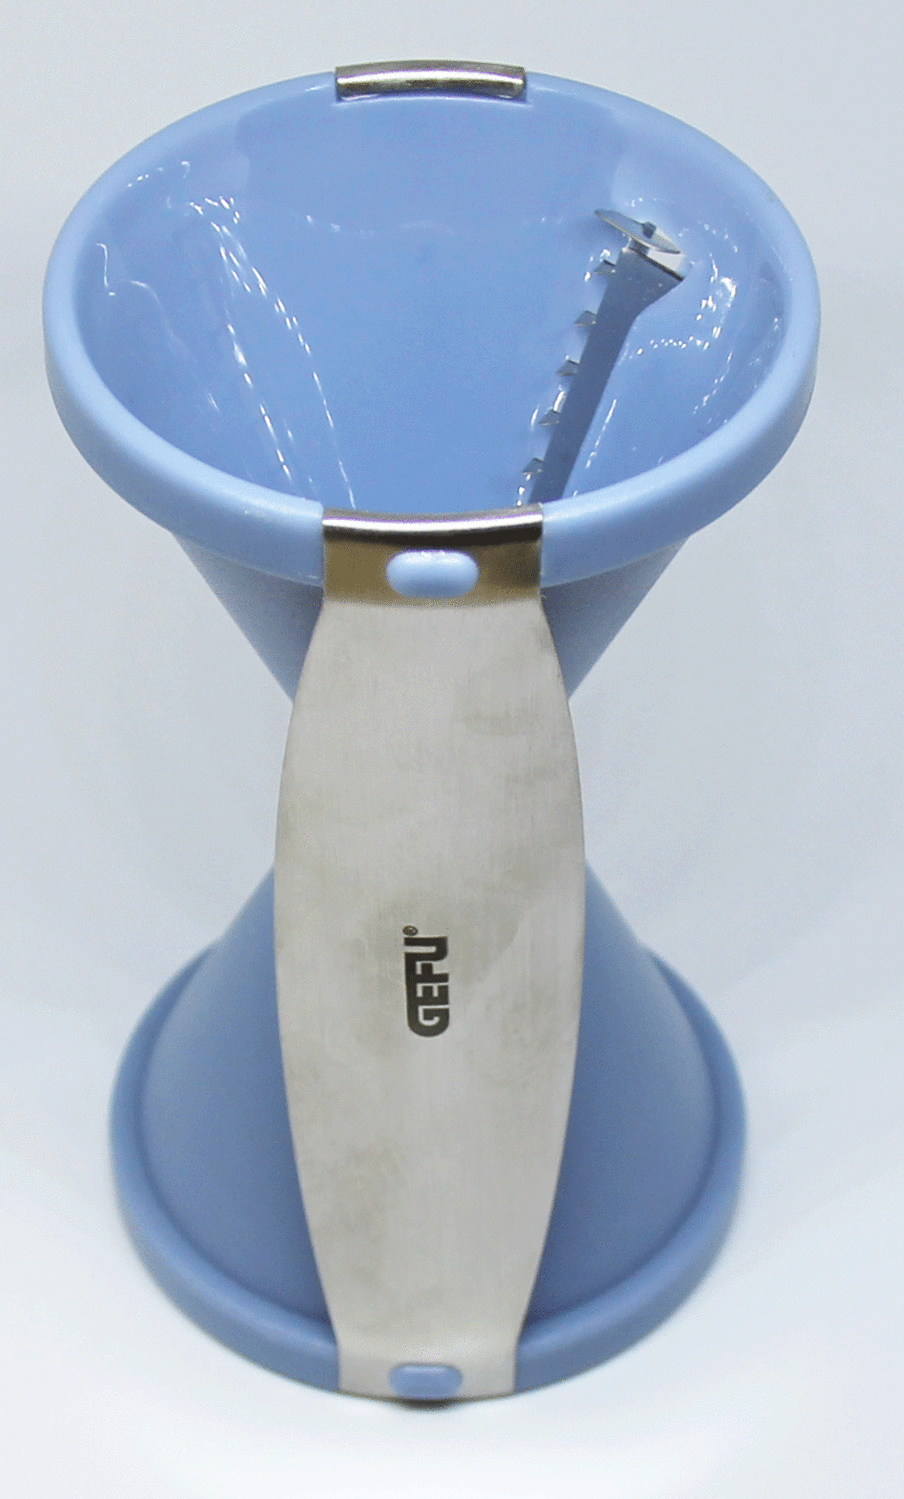 GEFU Spiralschneider Spirelli in bei KochForm blau